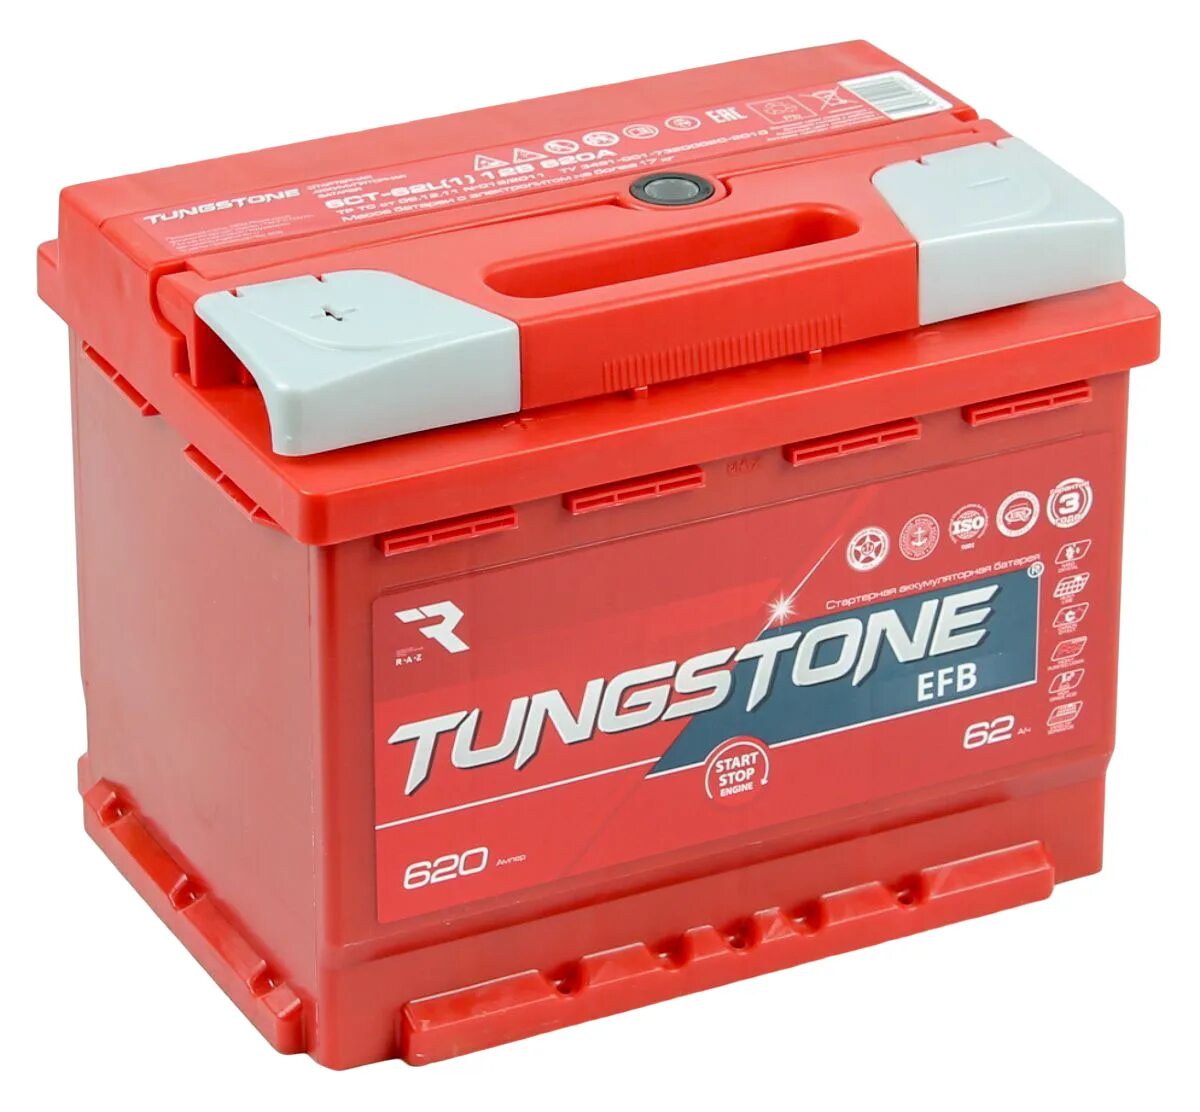 Tungstone EFB 6ст -77.0. Tungstone аккумуляторы 60 Ач. Tungstone EFB 6ст -62.0. EFB 6ct-60.0.